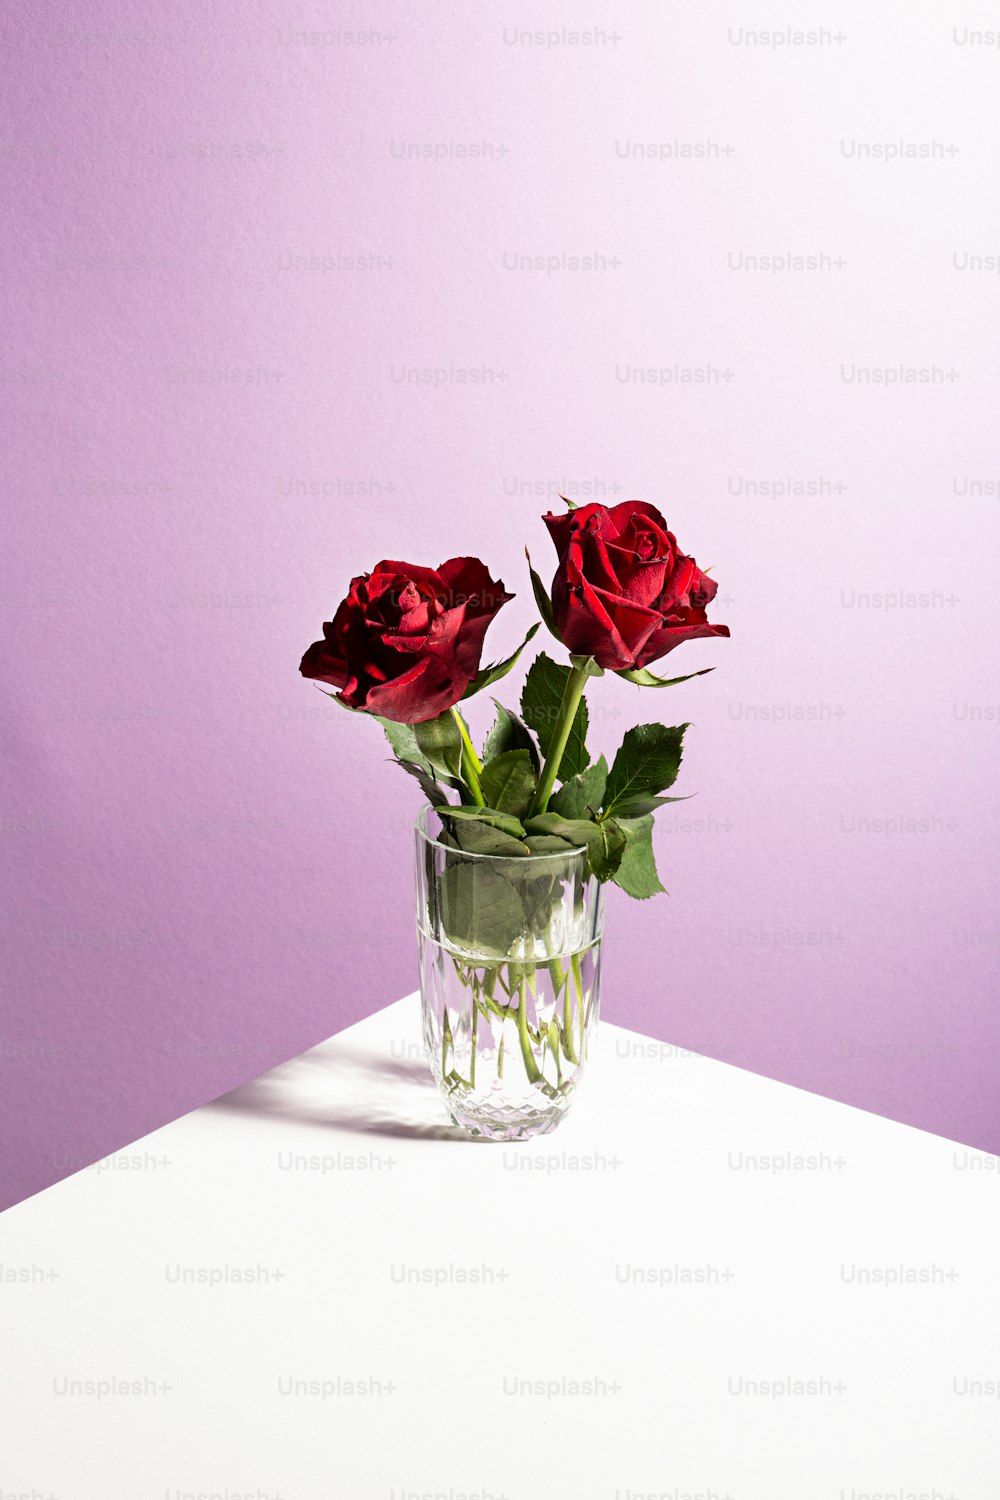 Deux roses rouges dans un vase en verre sur une table